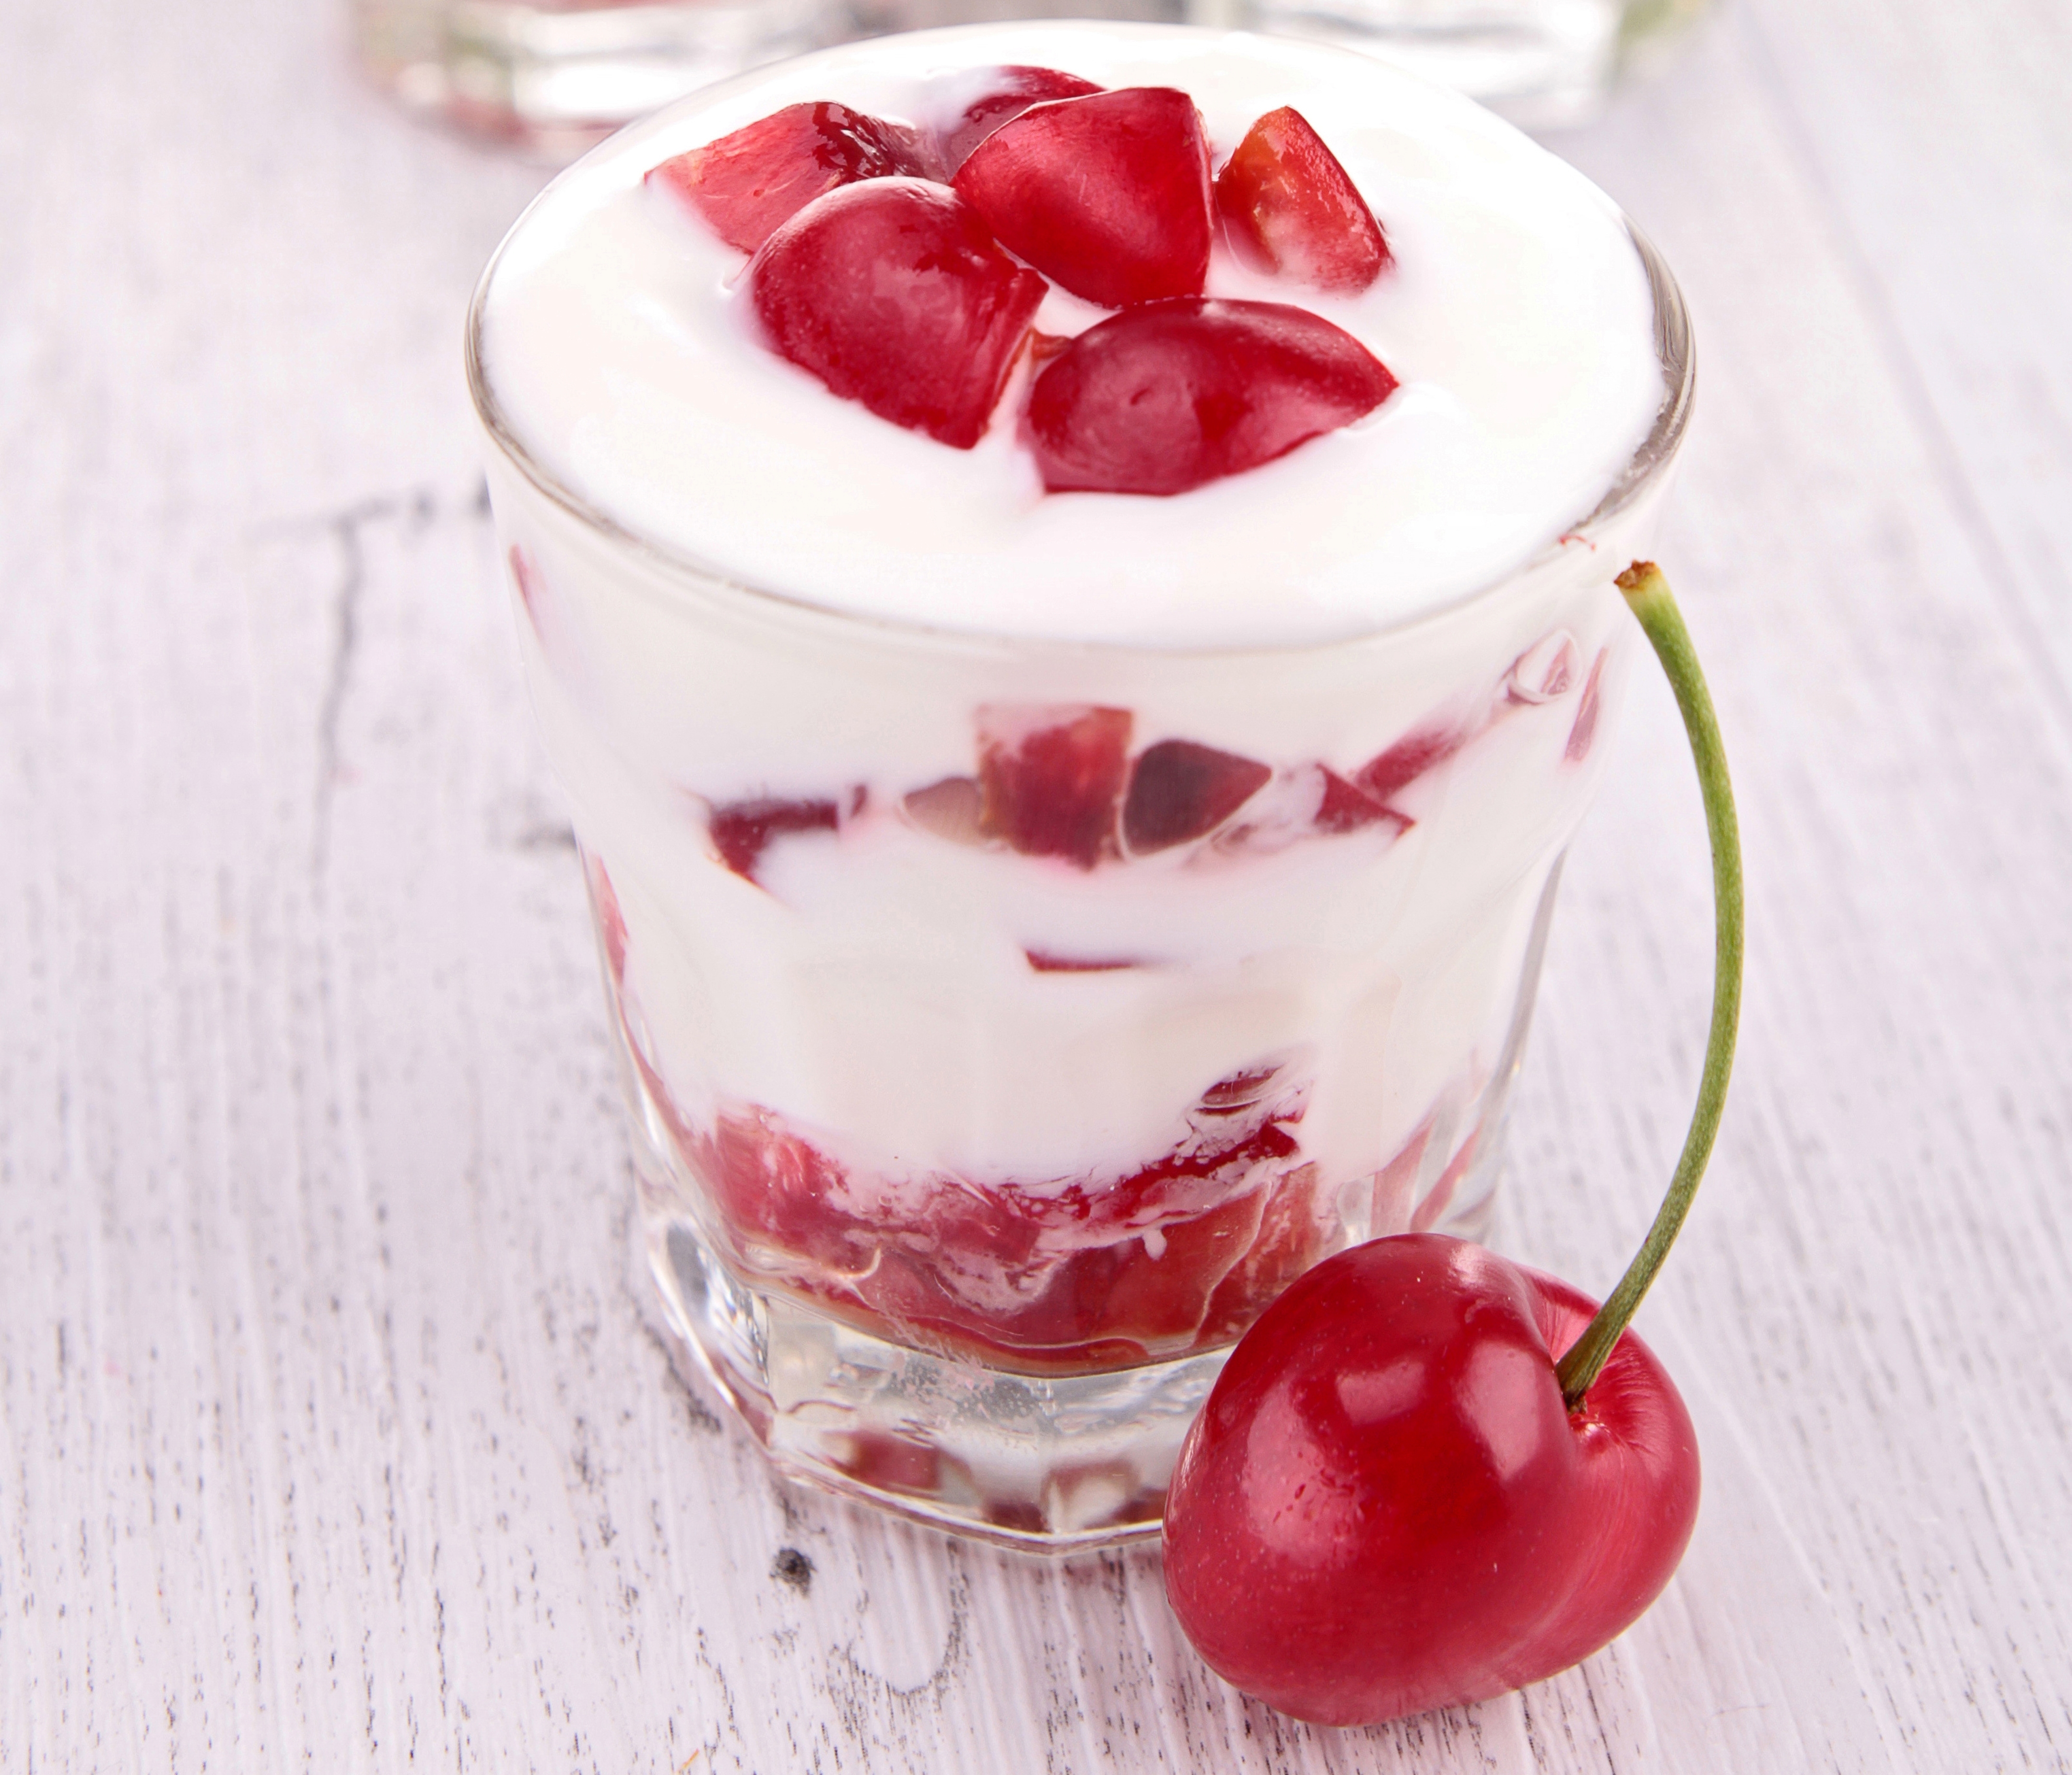 Yogurt Dessert Cherry 4320x3700